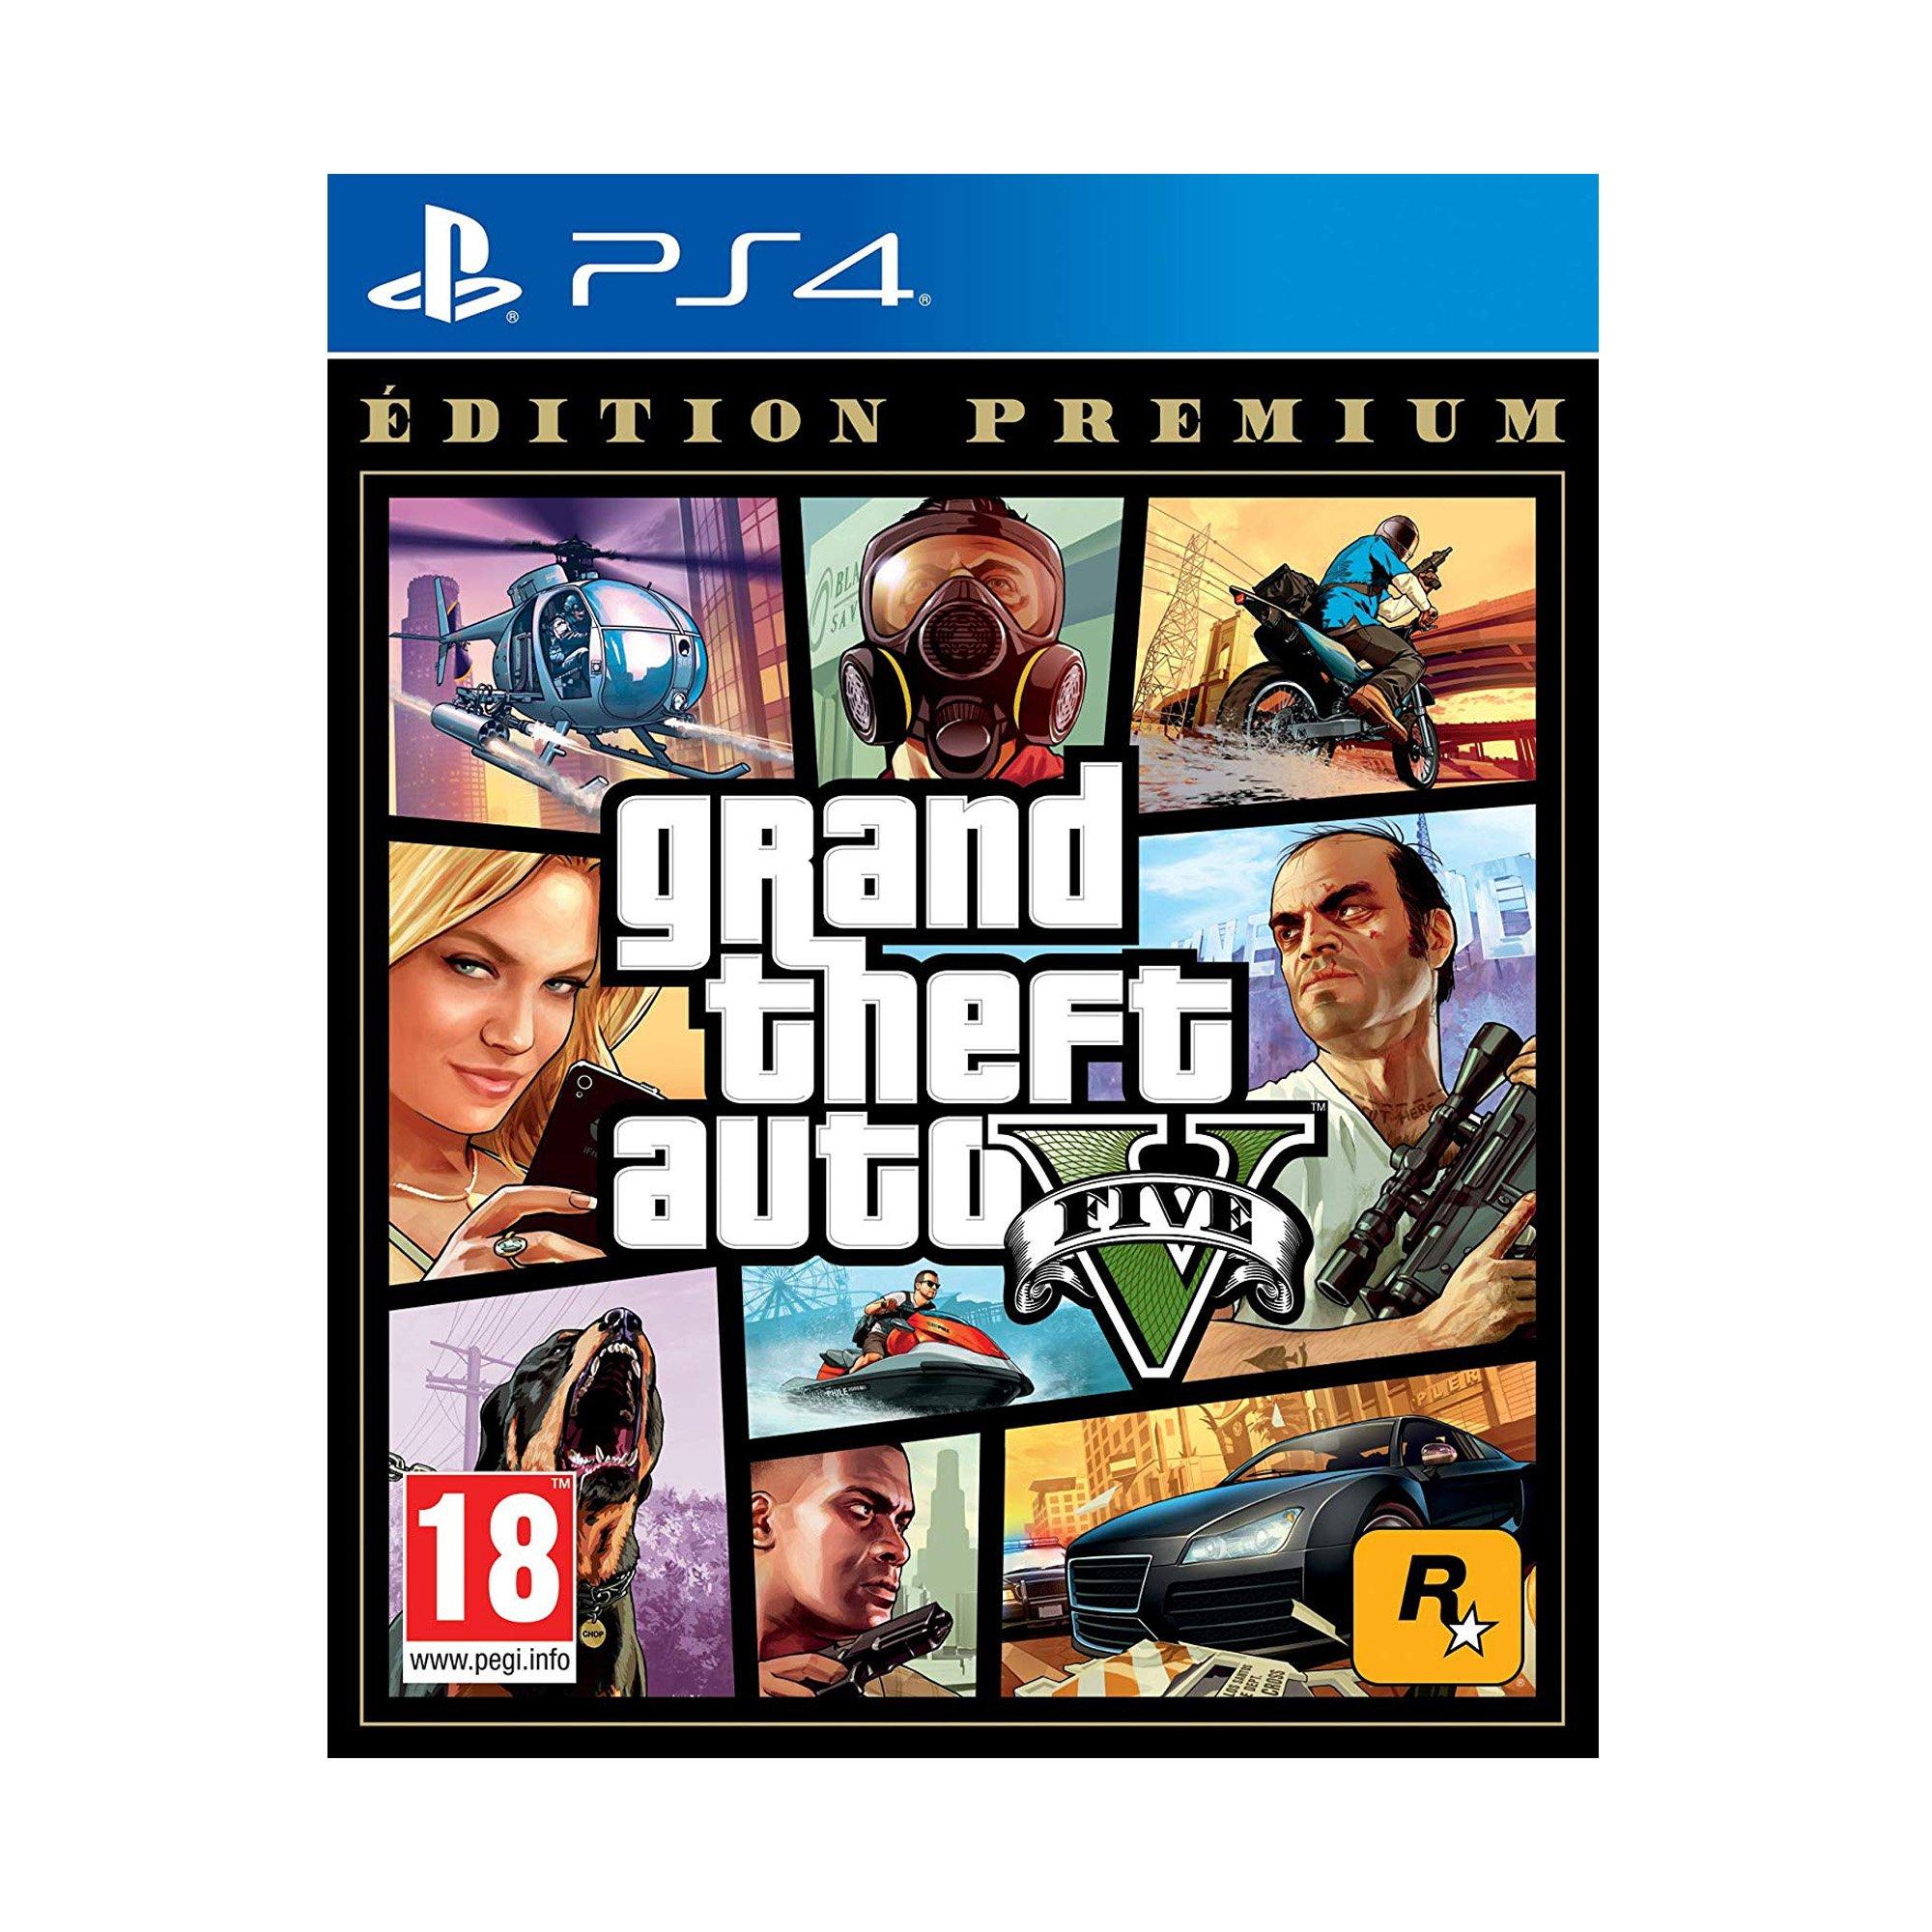 Grand theft auto v ps. GTA 5 Premium Edition ps4. Grand Theft auto 5 ps4. GTA V ps4 диск. Диск GTA 5 на PLAYSTATION 4.